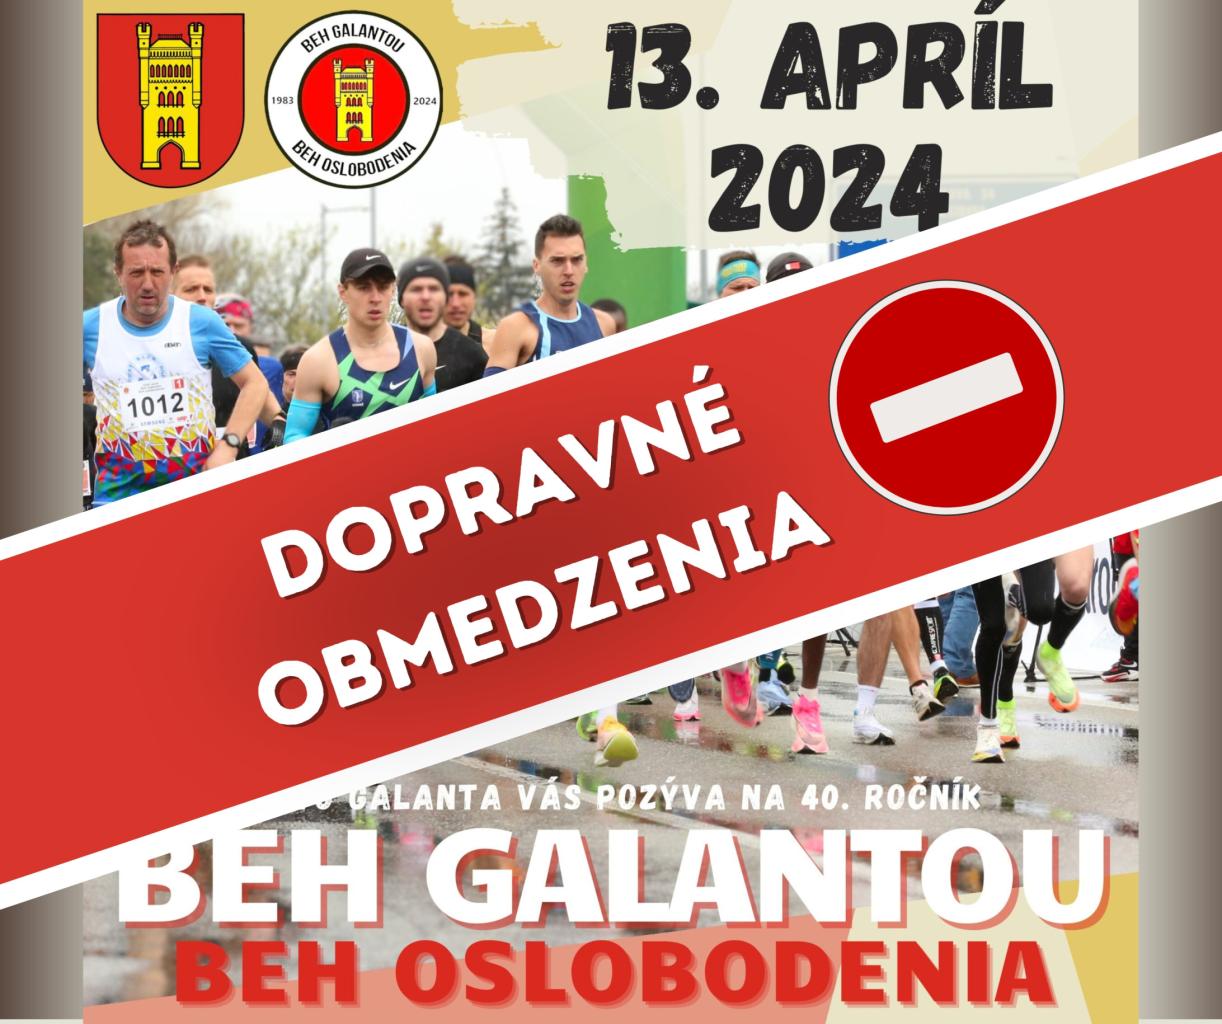 Dopravné obmedzenia v meste Galanta počas podujatia Beh Galantou – Beh oslobodenia 13.4.2024